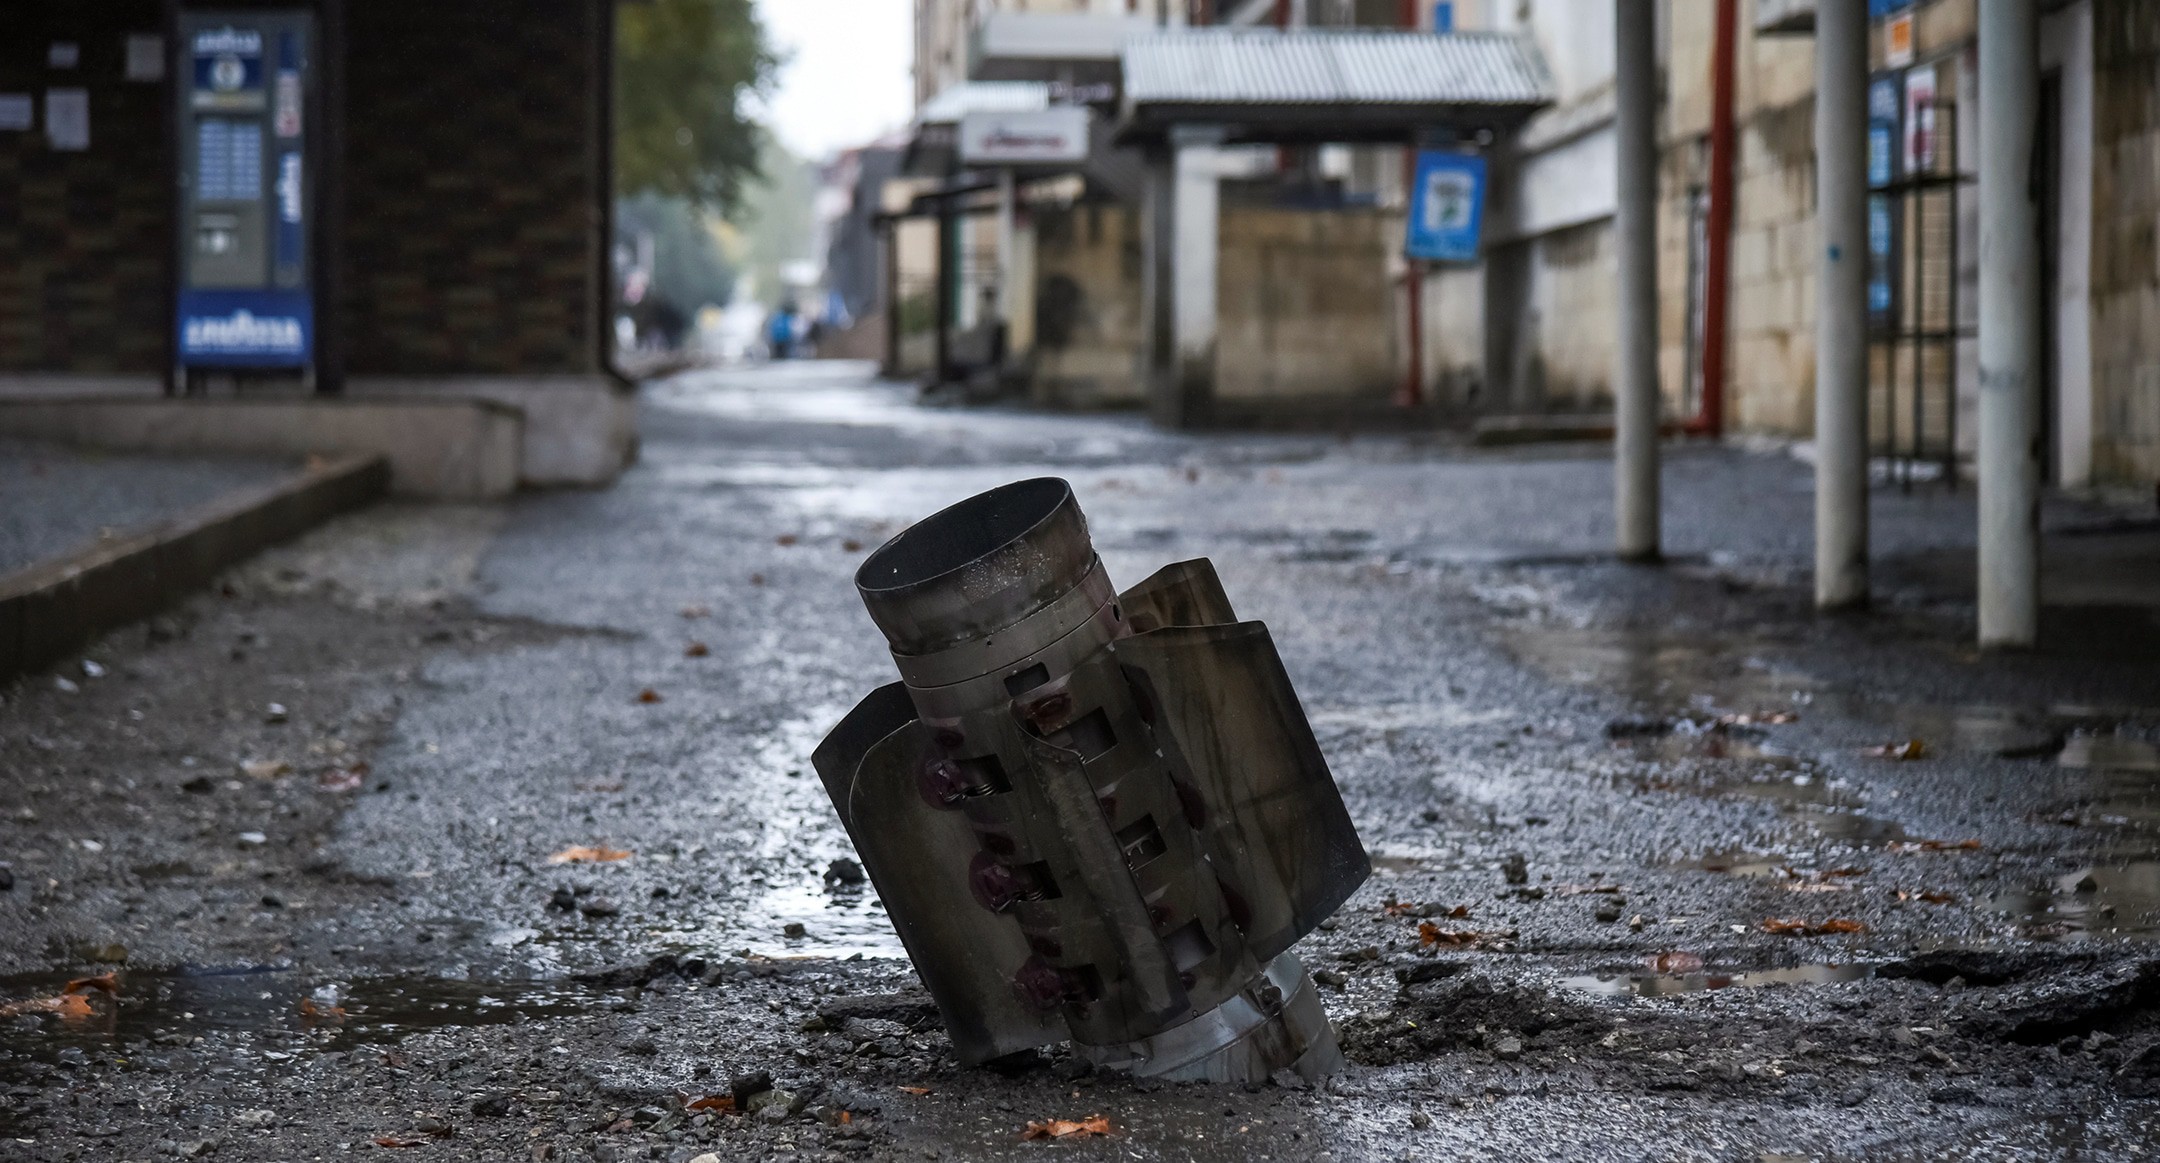 Хвостовая часть снаряда, 5 октября 2020 года. Давид Каграманян/НКР инфоцентр/Reuters